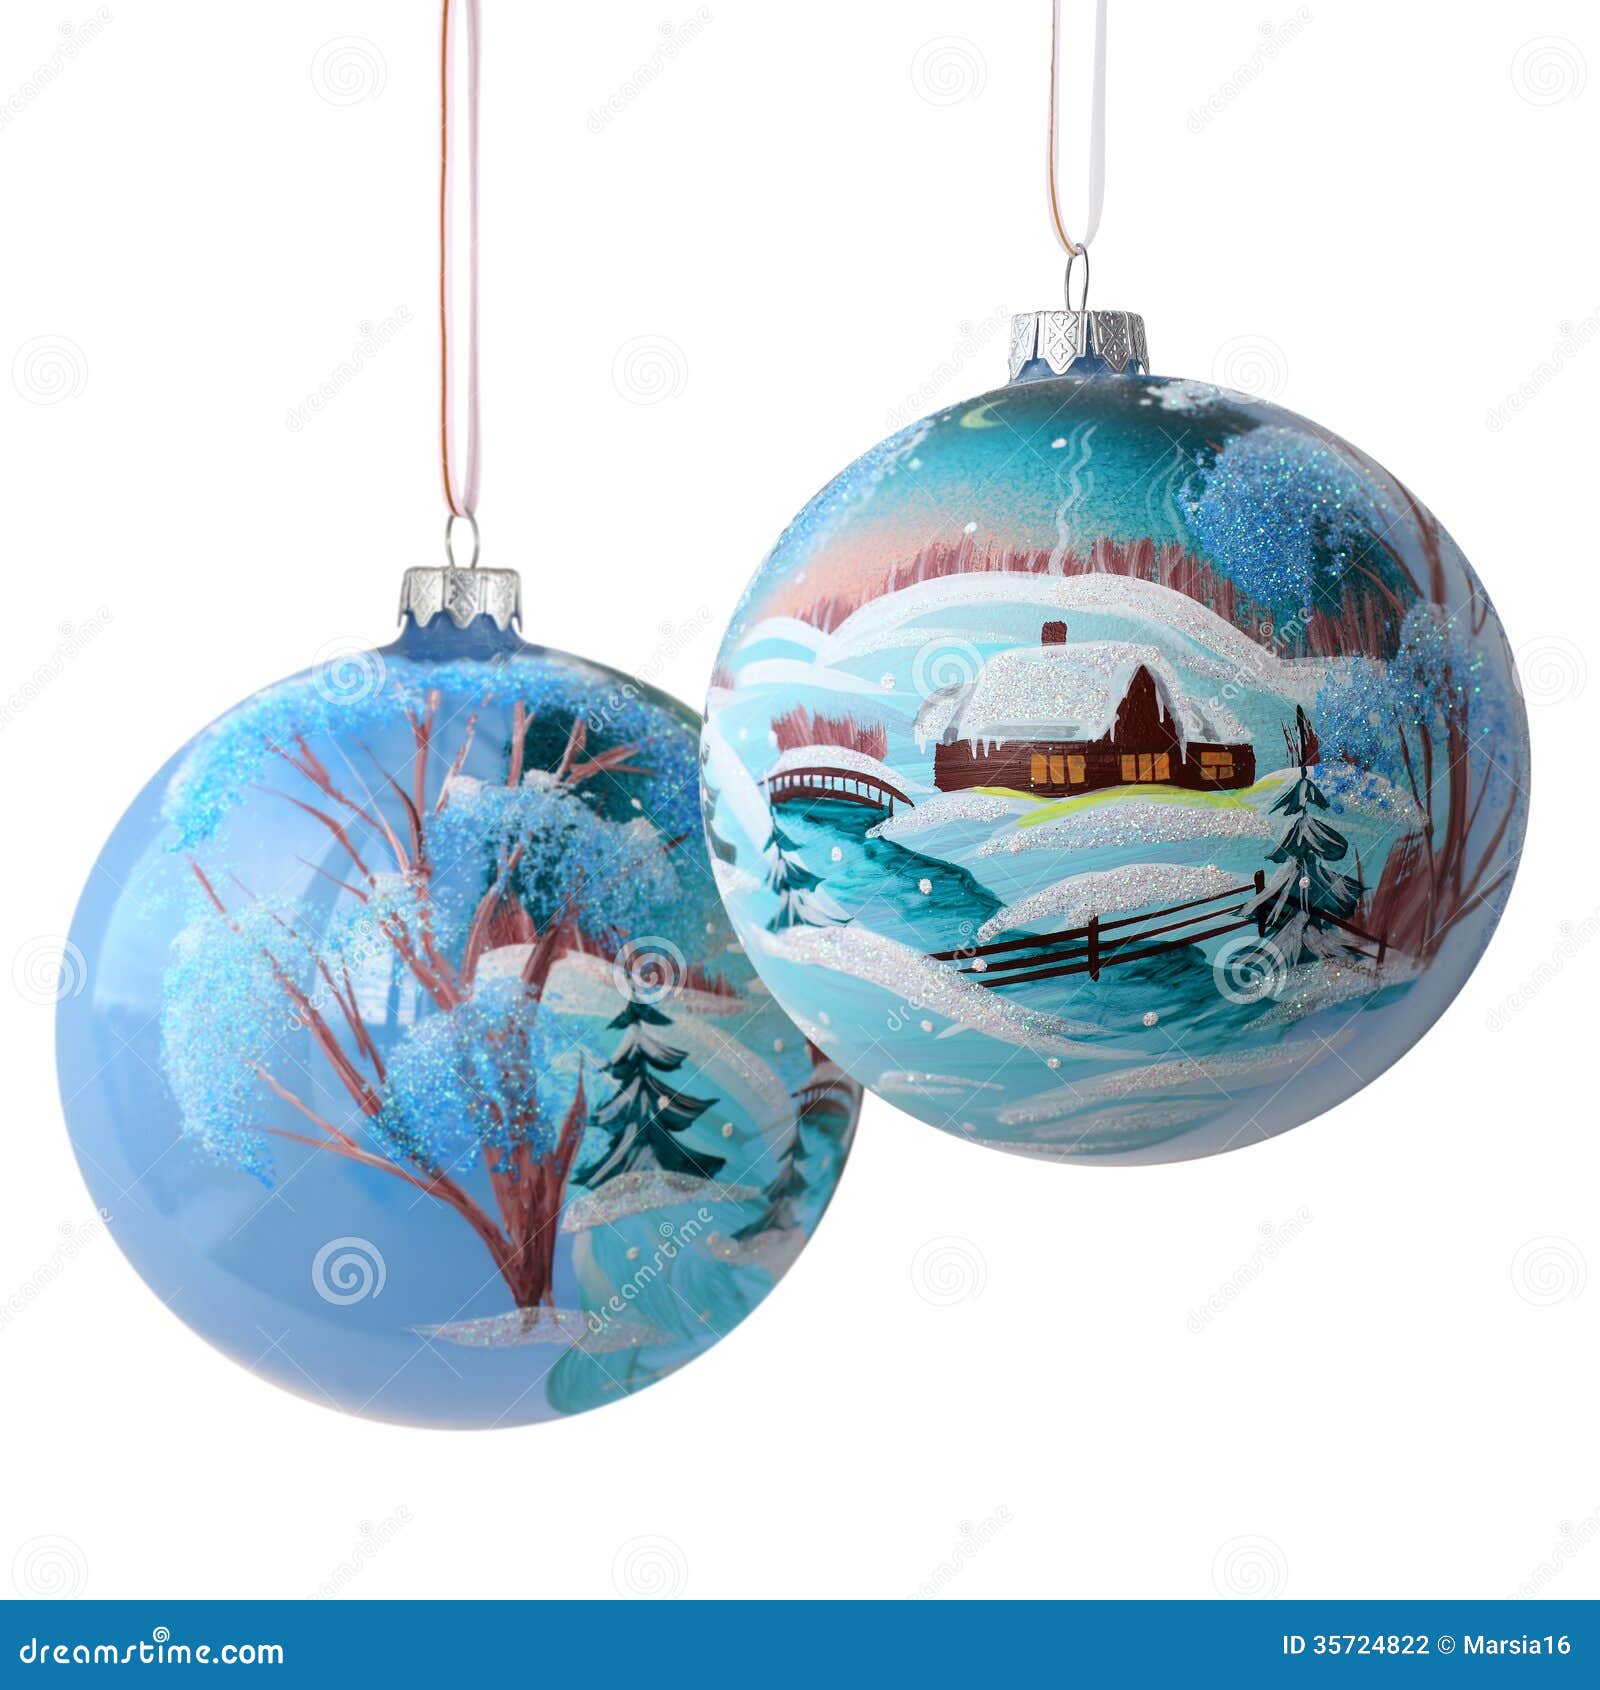 Foto Su Palla Di Natale.Due Palle Di Natale Su Bianco Fotografia Stock Immagine Di Gruppo Nuovo 35724822